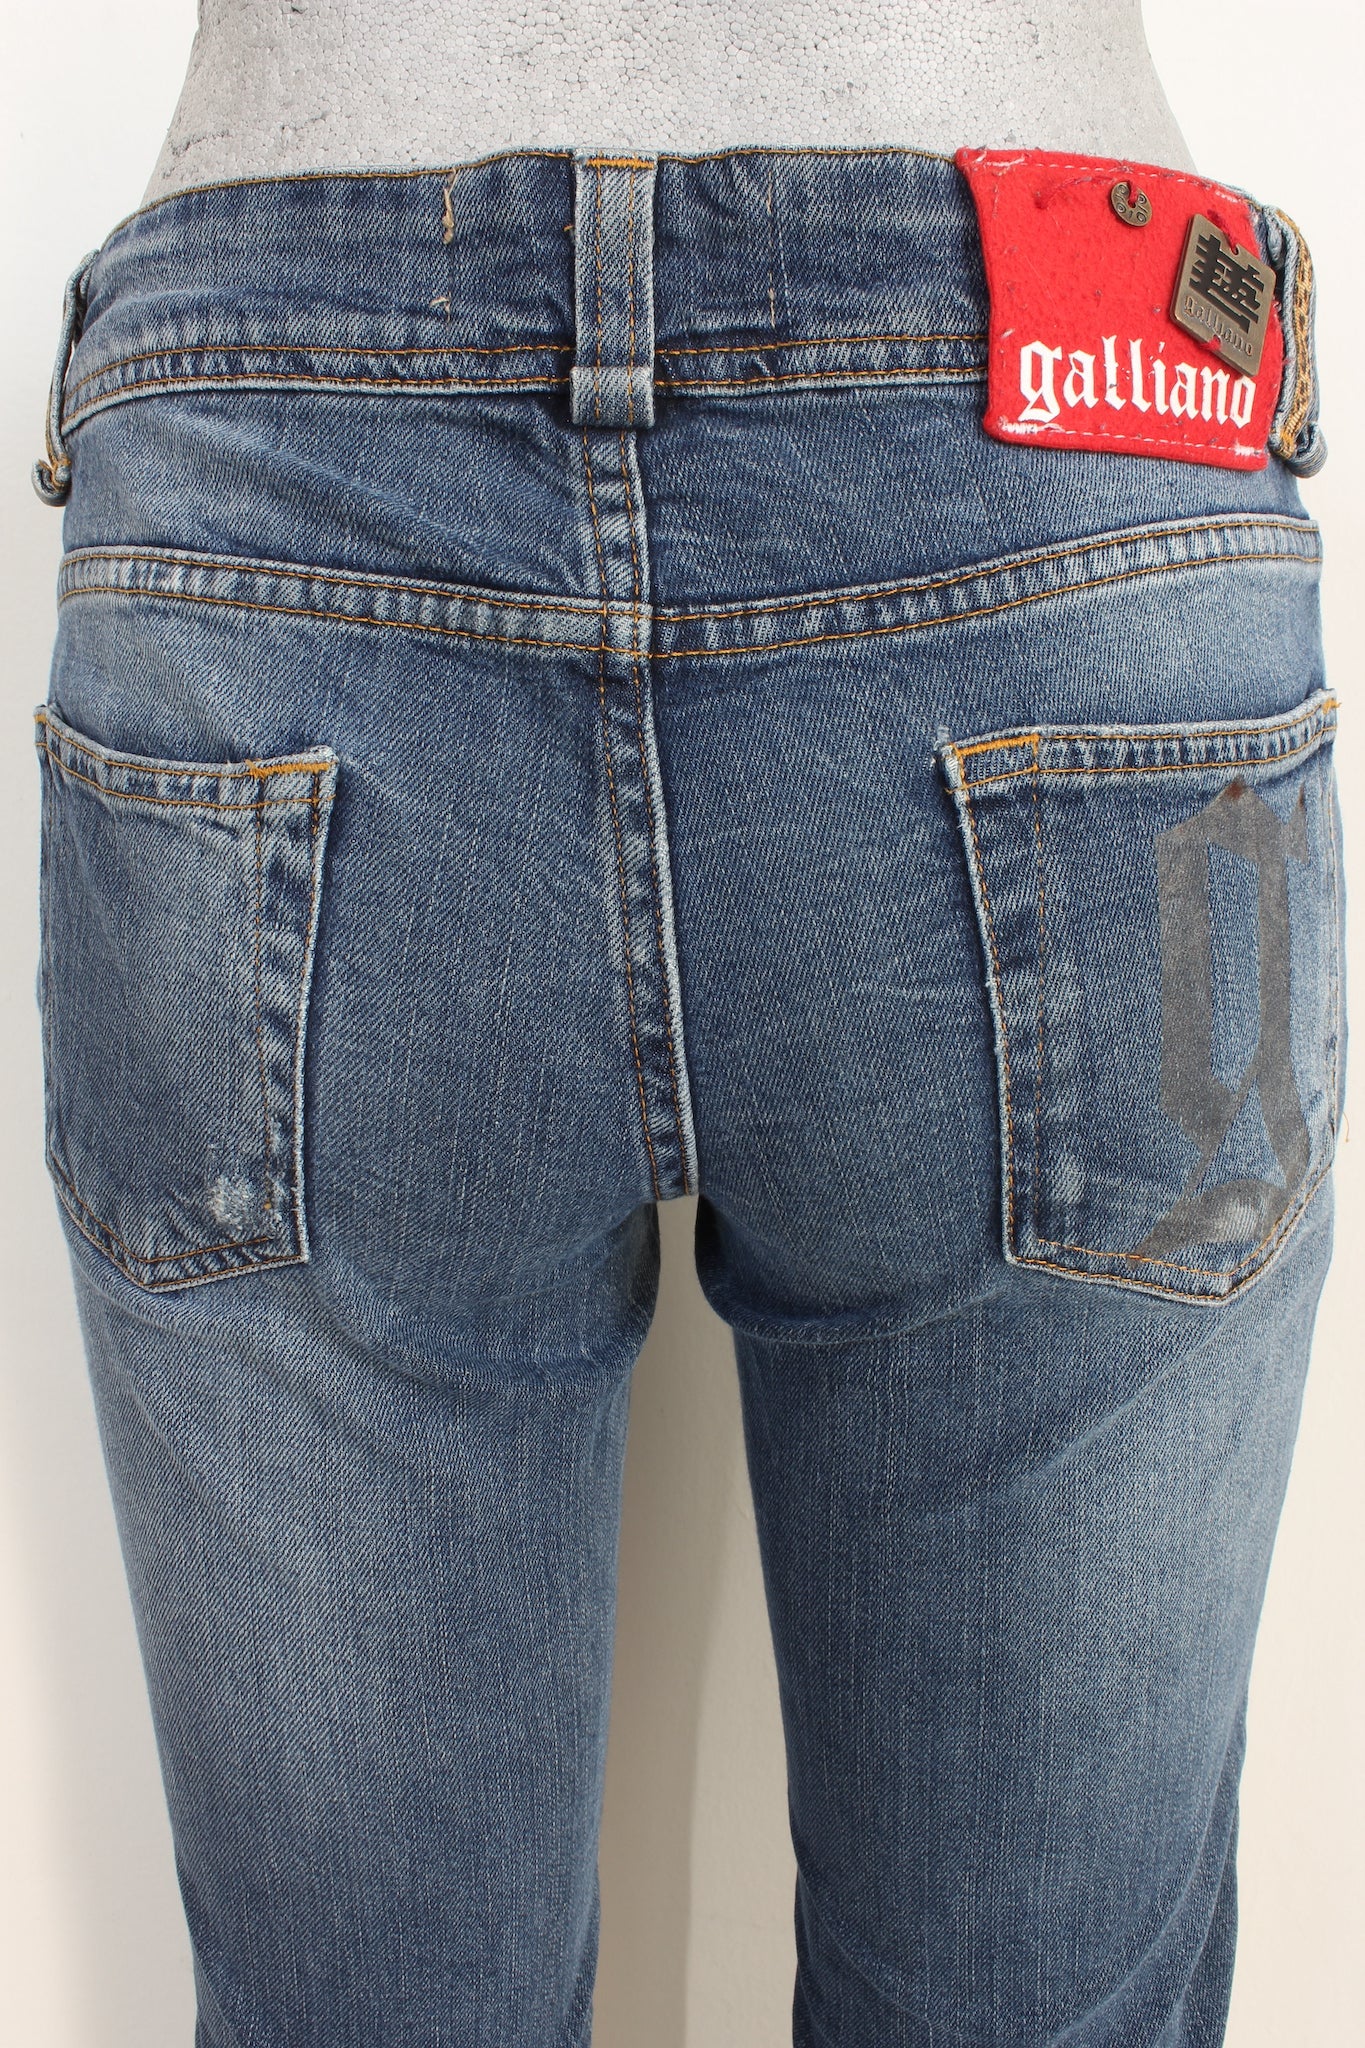 John Galliano Jeans Dritto Blu Vintage Anni 2000